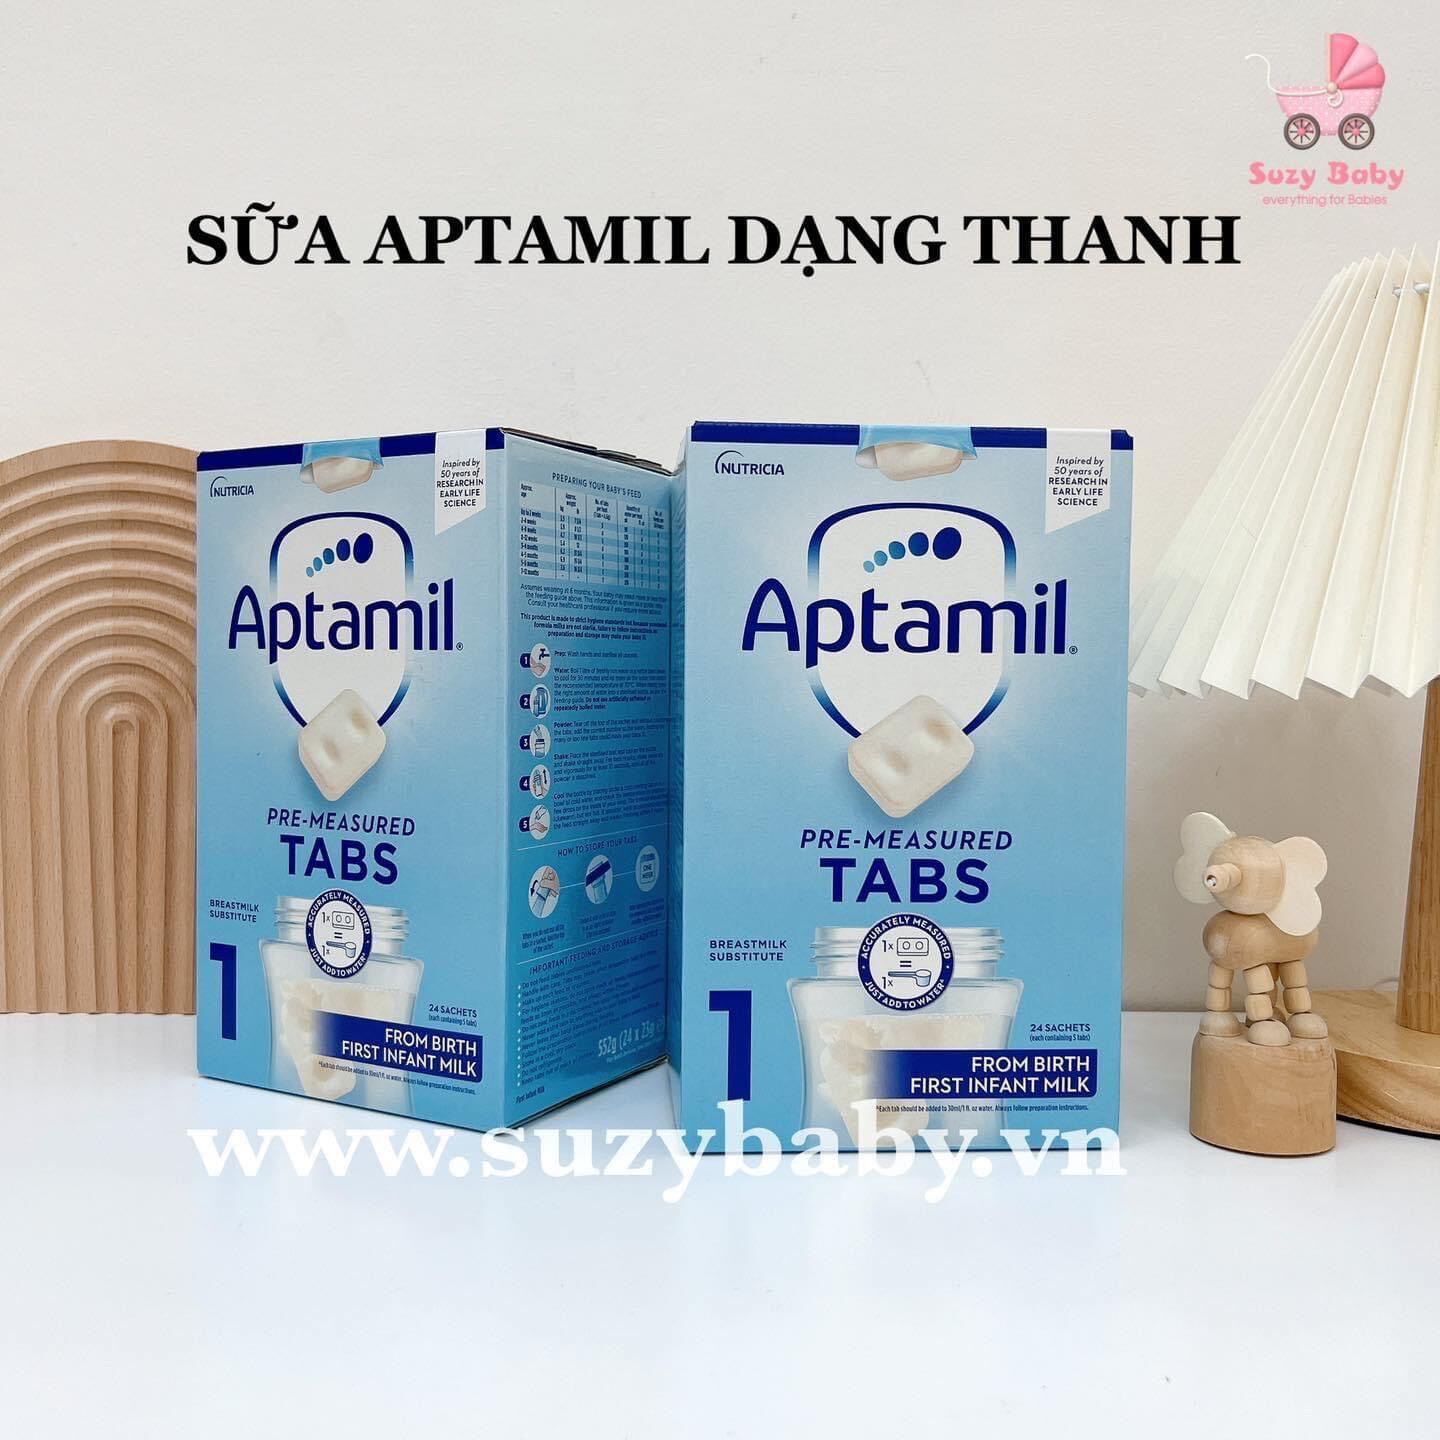 Sữa aptamil thanh của Anh cho bé 0-1 tuổi